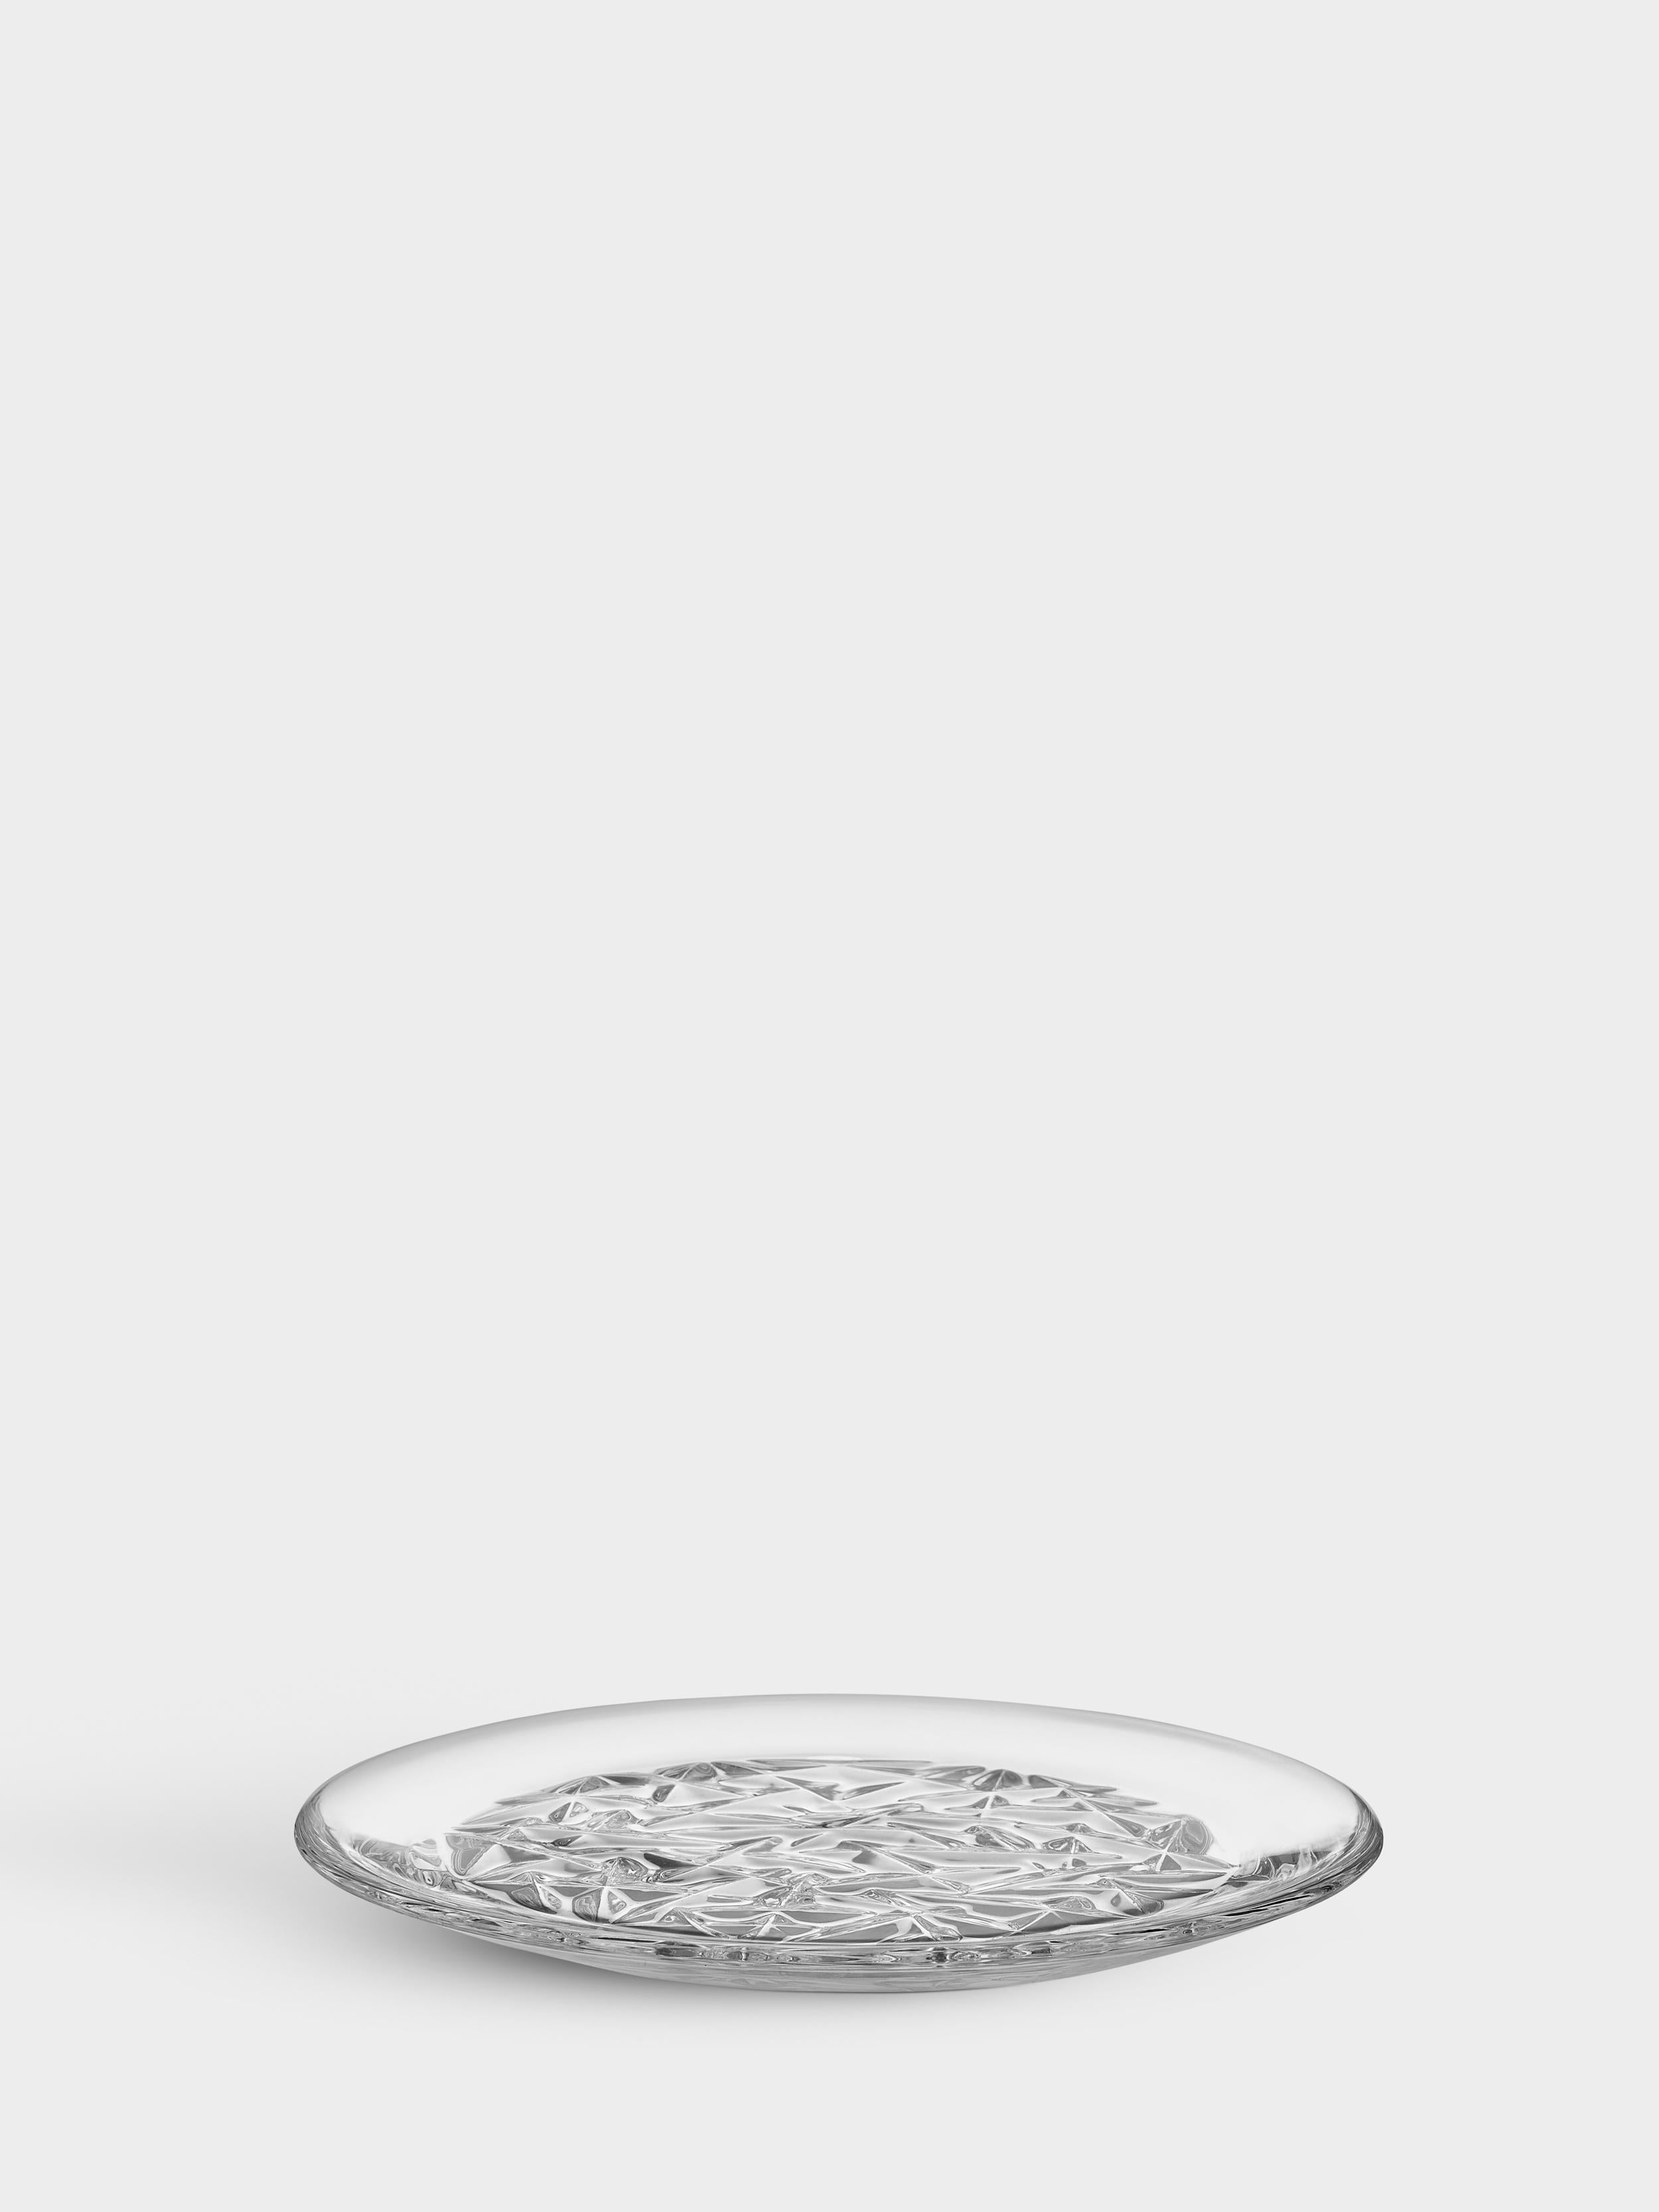 La collection Carat est basée sur une interprétation contemporaine du verre taillé traditionnel qui a fait la renommée mondiale d'Orrefors. La géométrie irrégulière produit de magnifiques reflets de lumière dans le cristal. Utilisez l'assiette